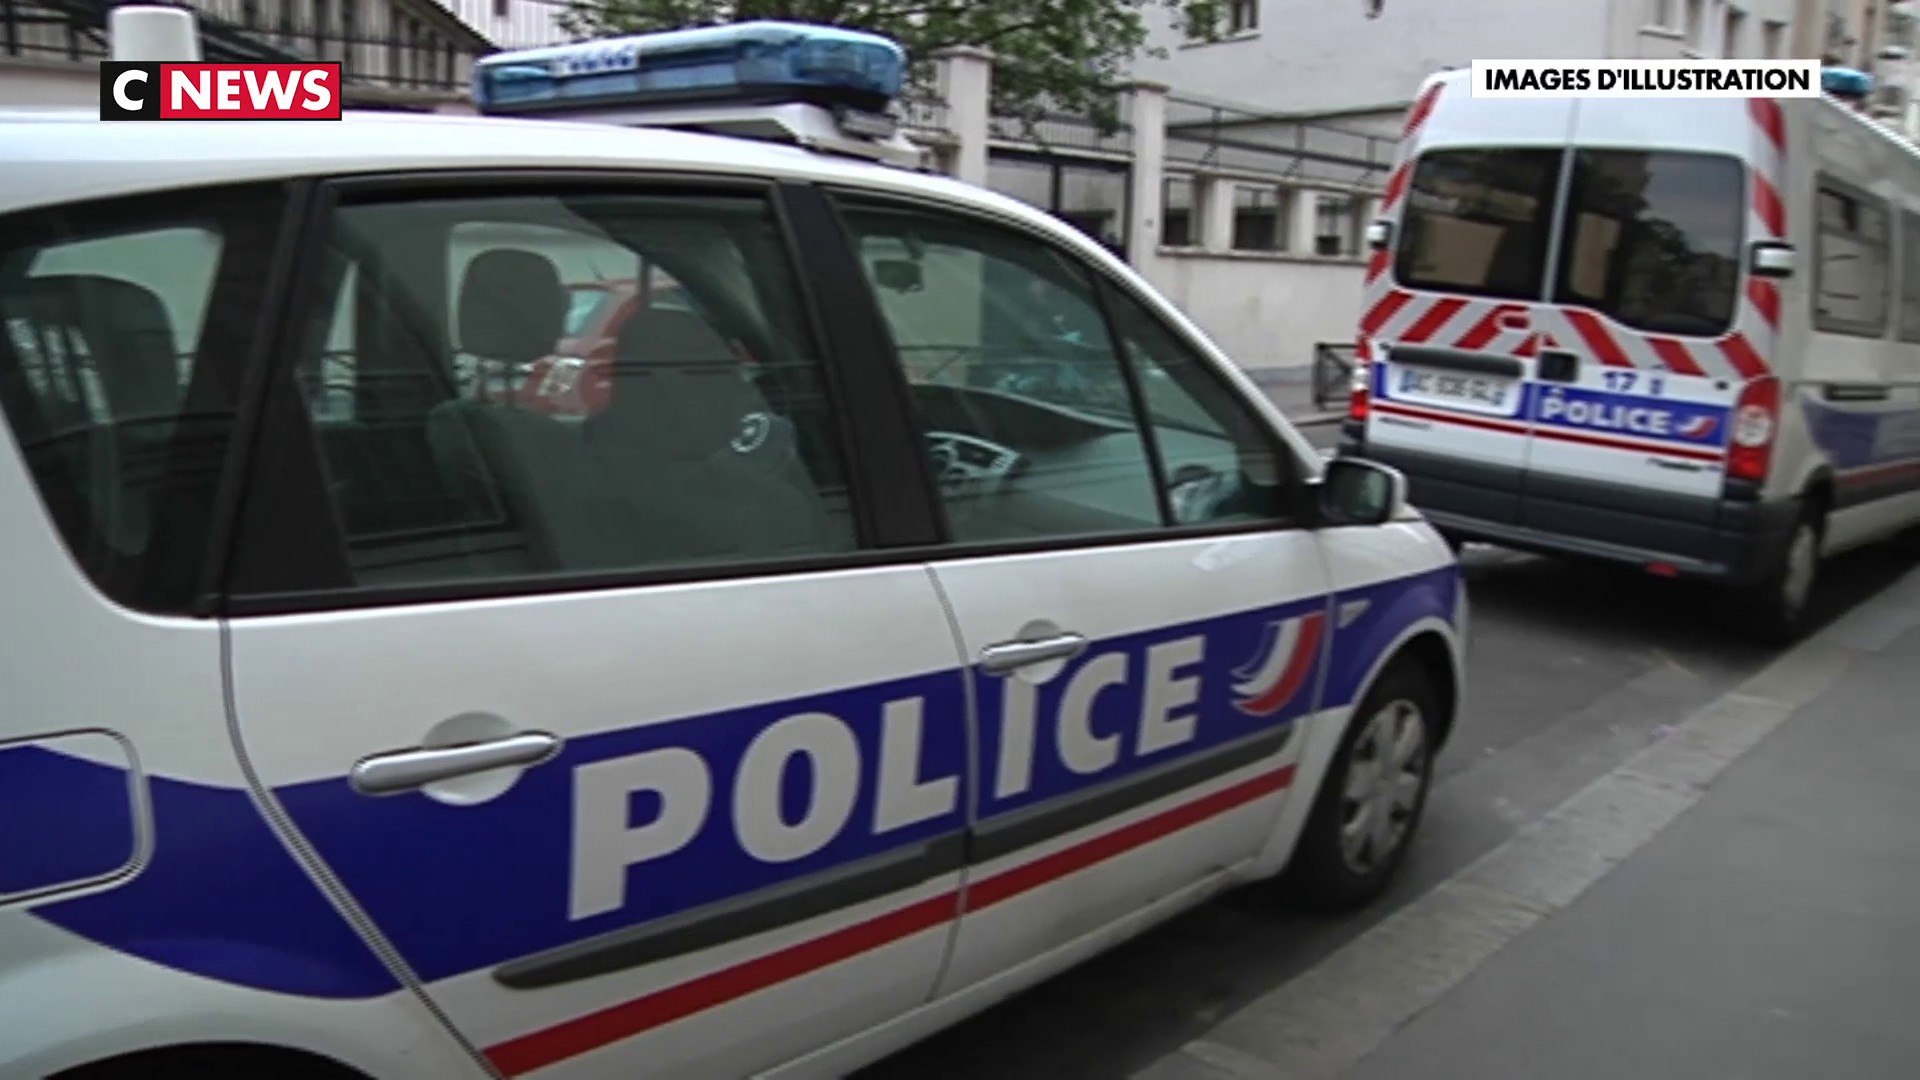 France: Saisie record de près de 15 tonnes de gaz hilarant près de